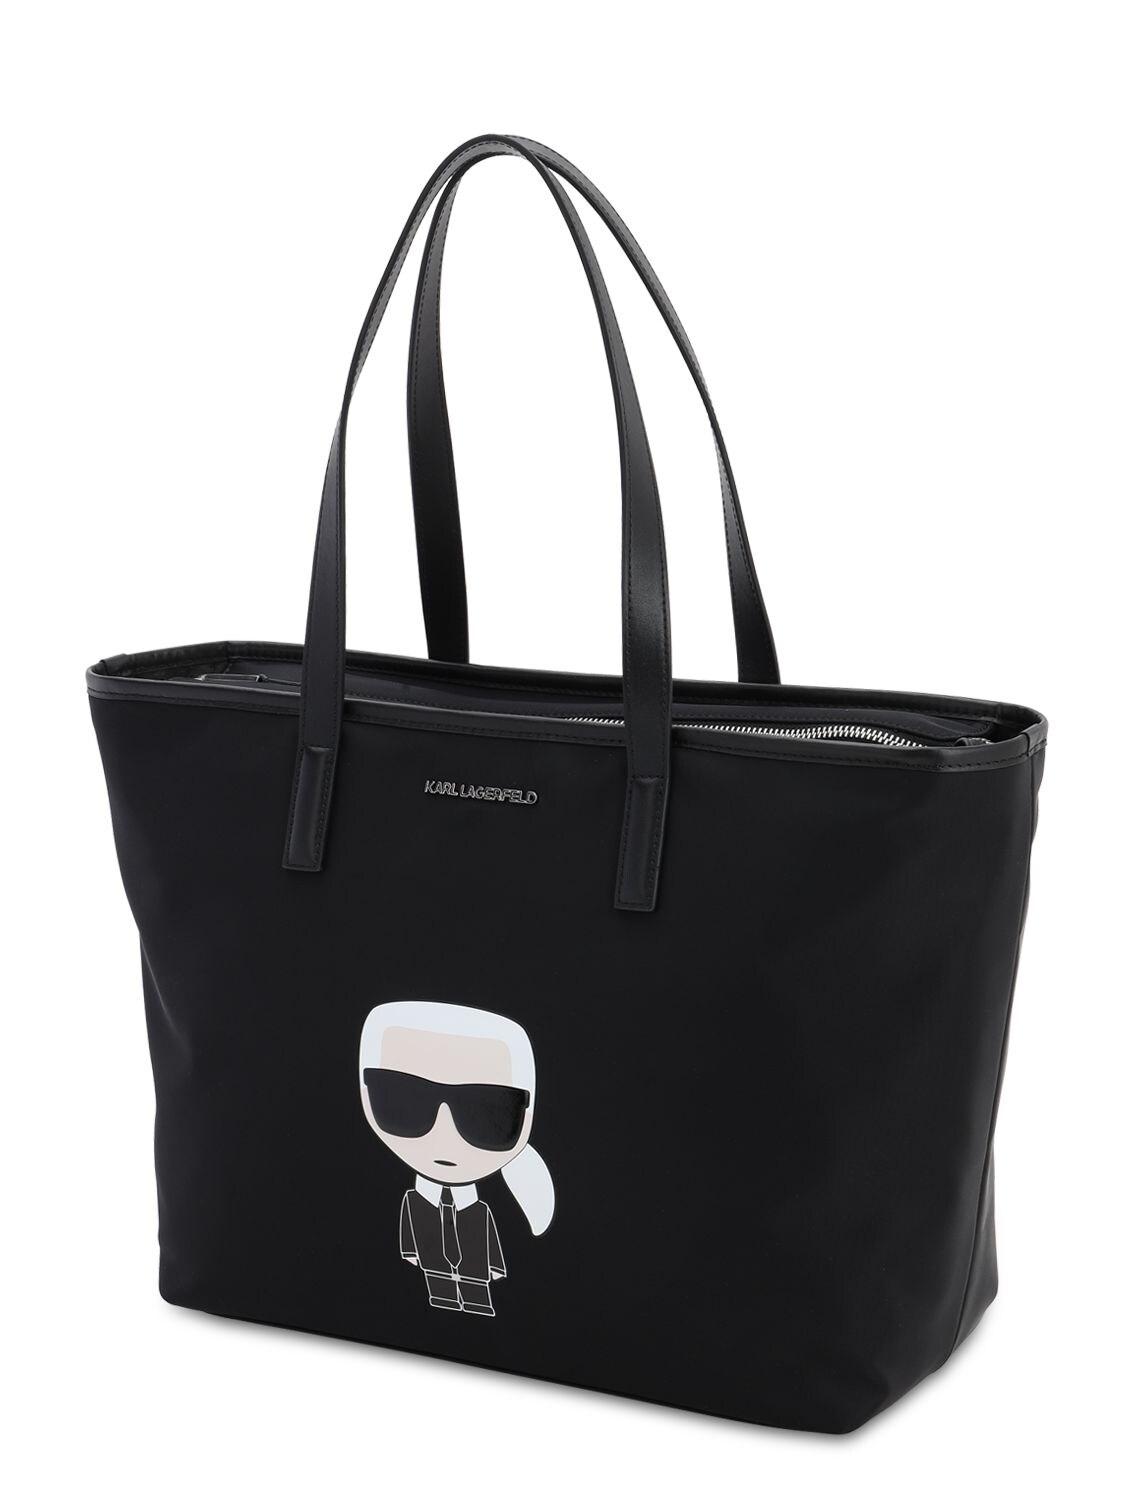 Karl Lagerfeld K/ikonik Karl Tote Bag W/leather in Black - Save 74% - Lyst